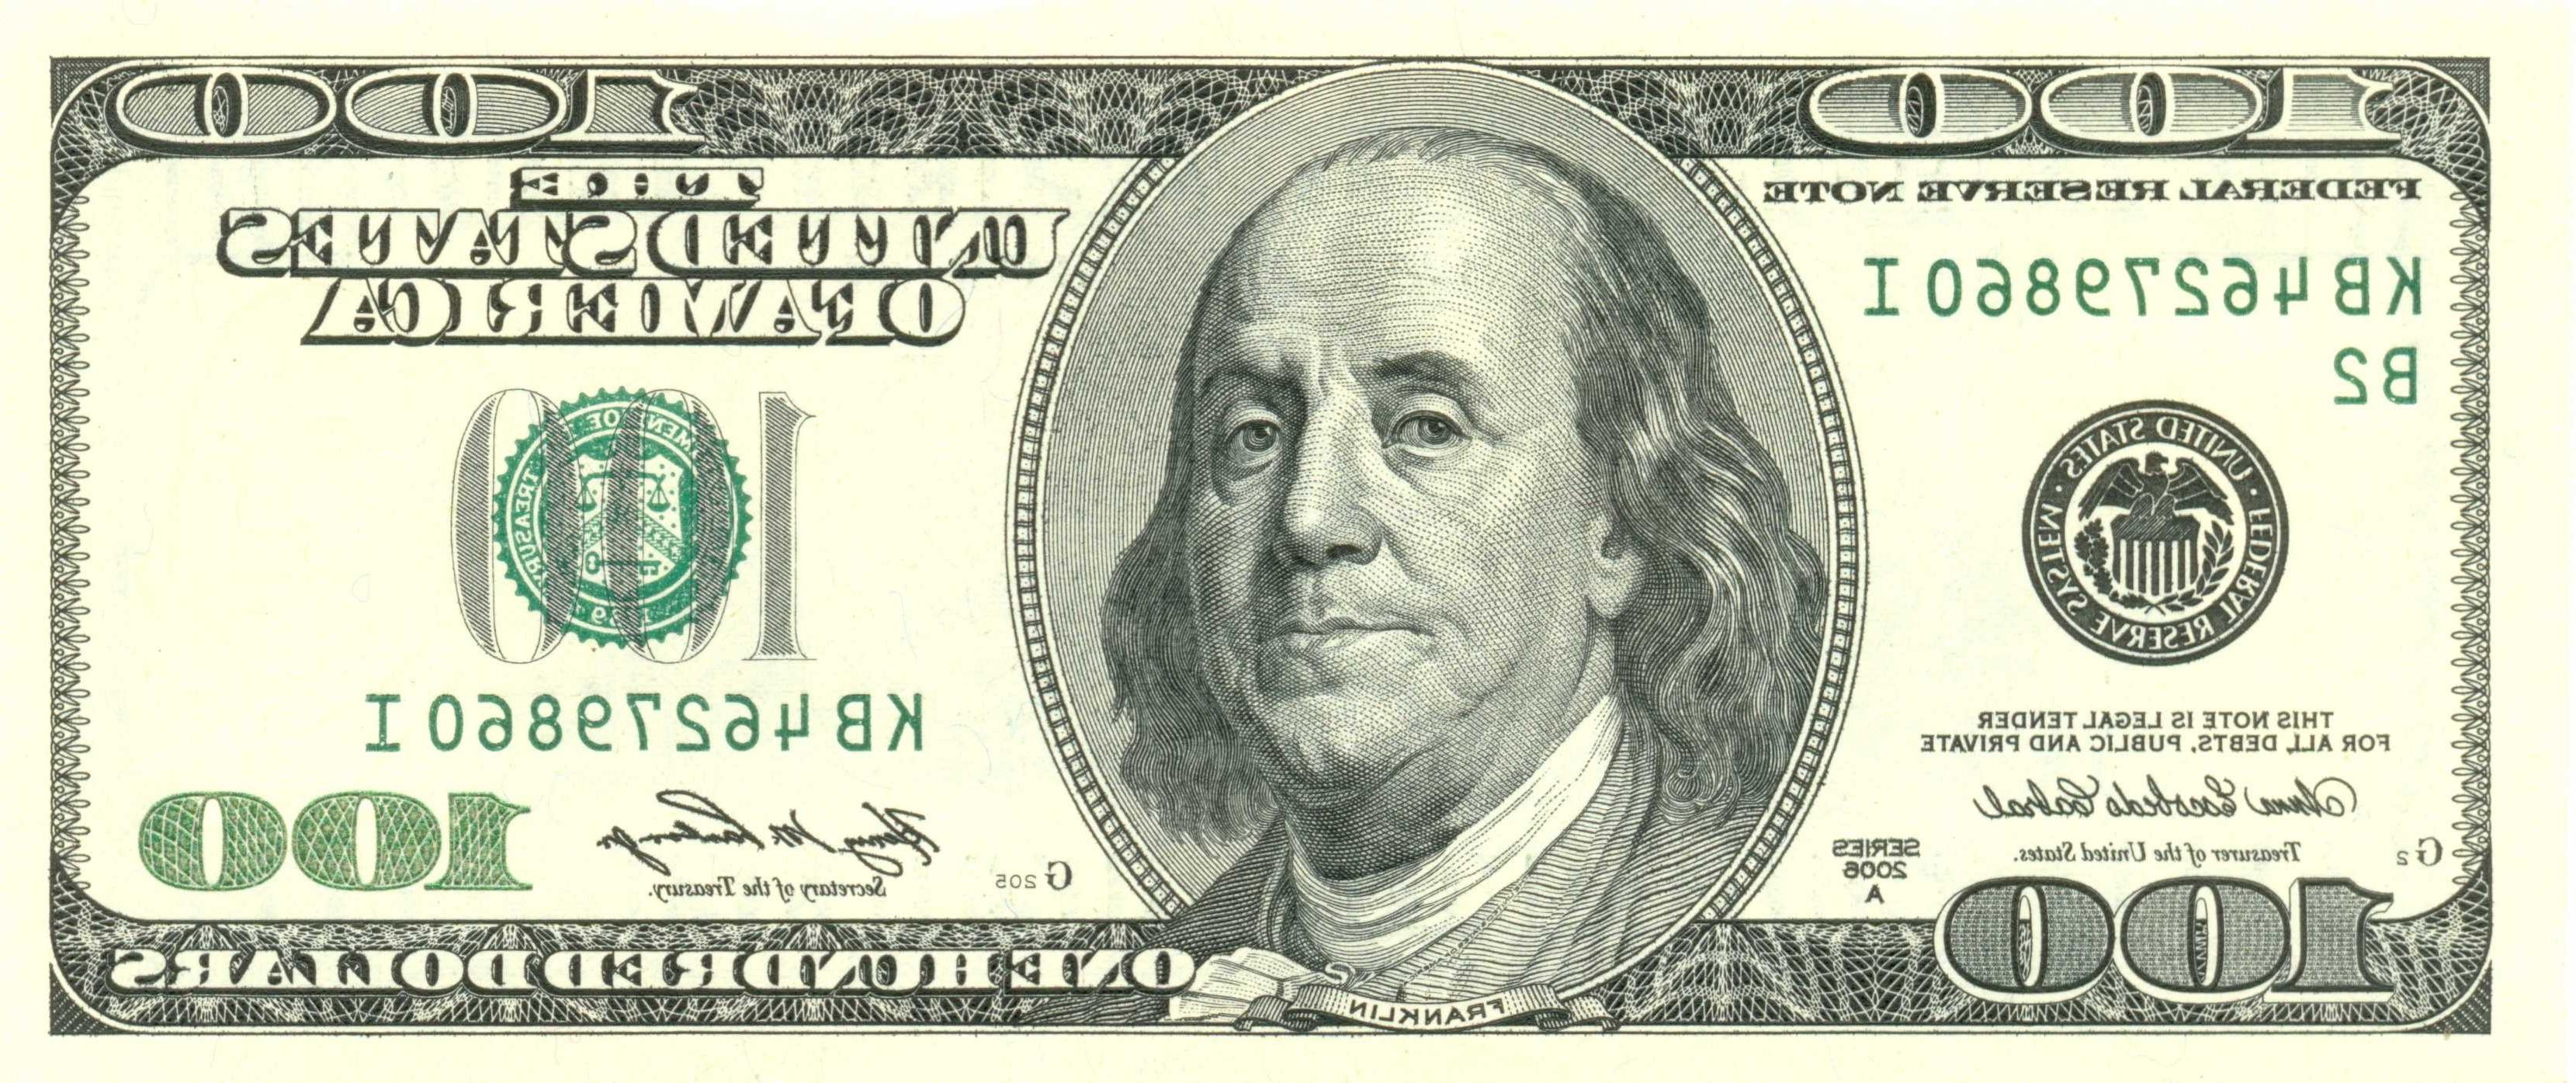 100 Dollar Bills Printable